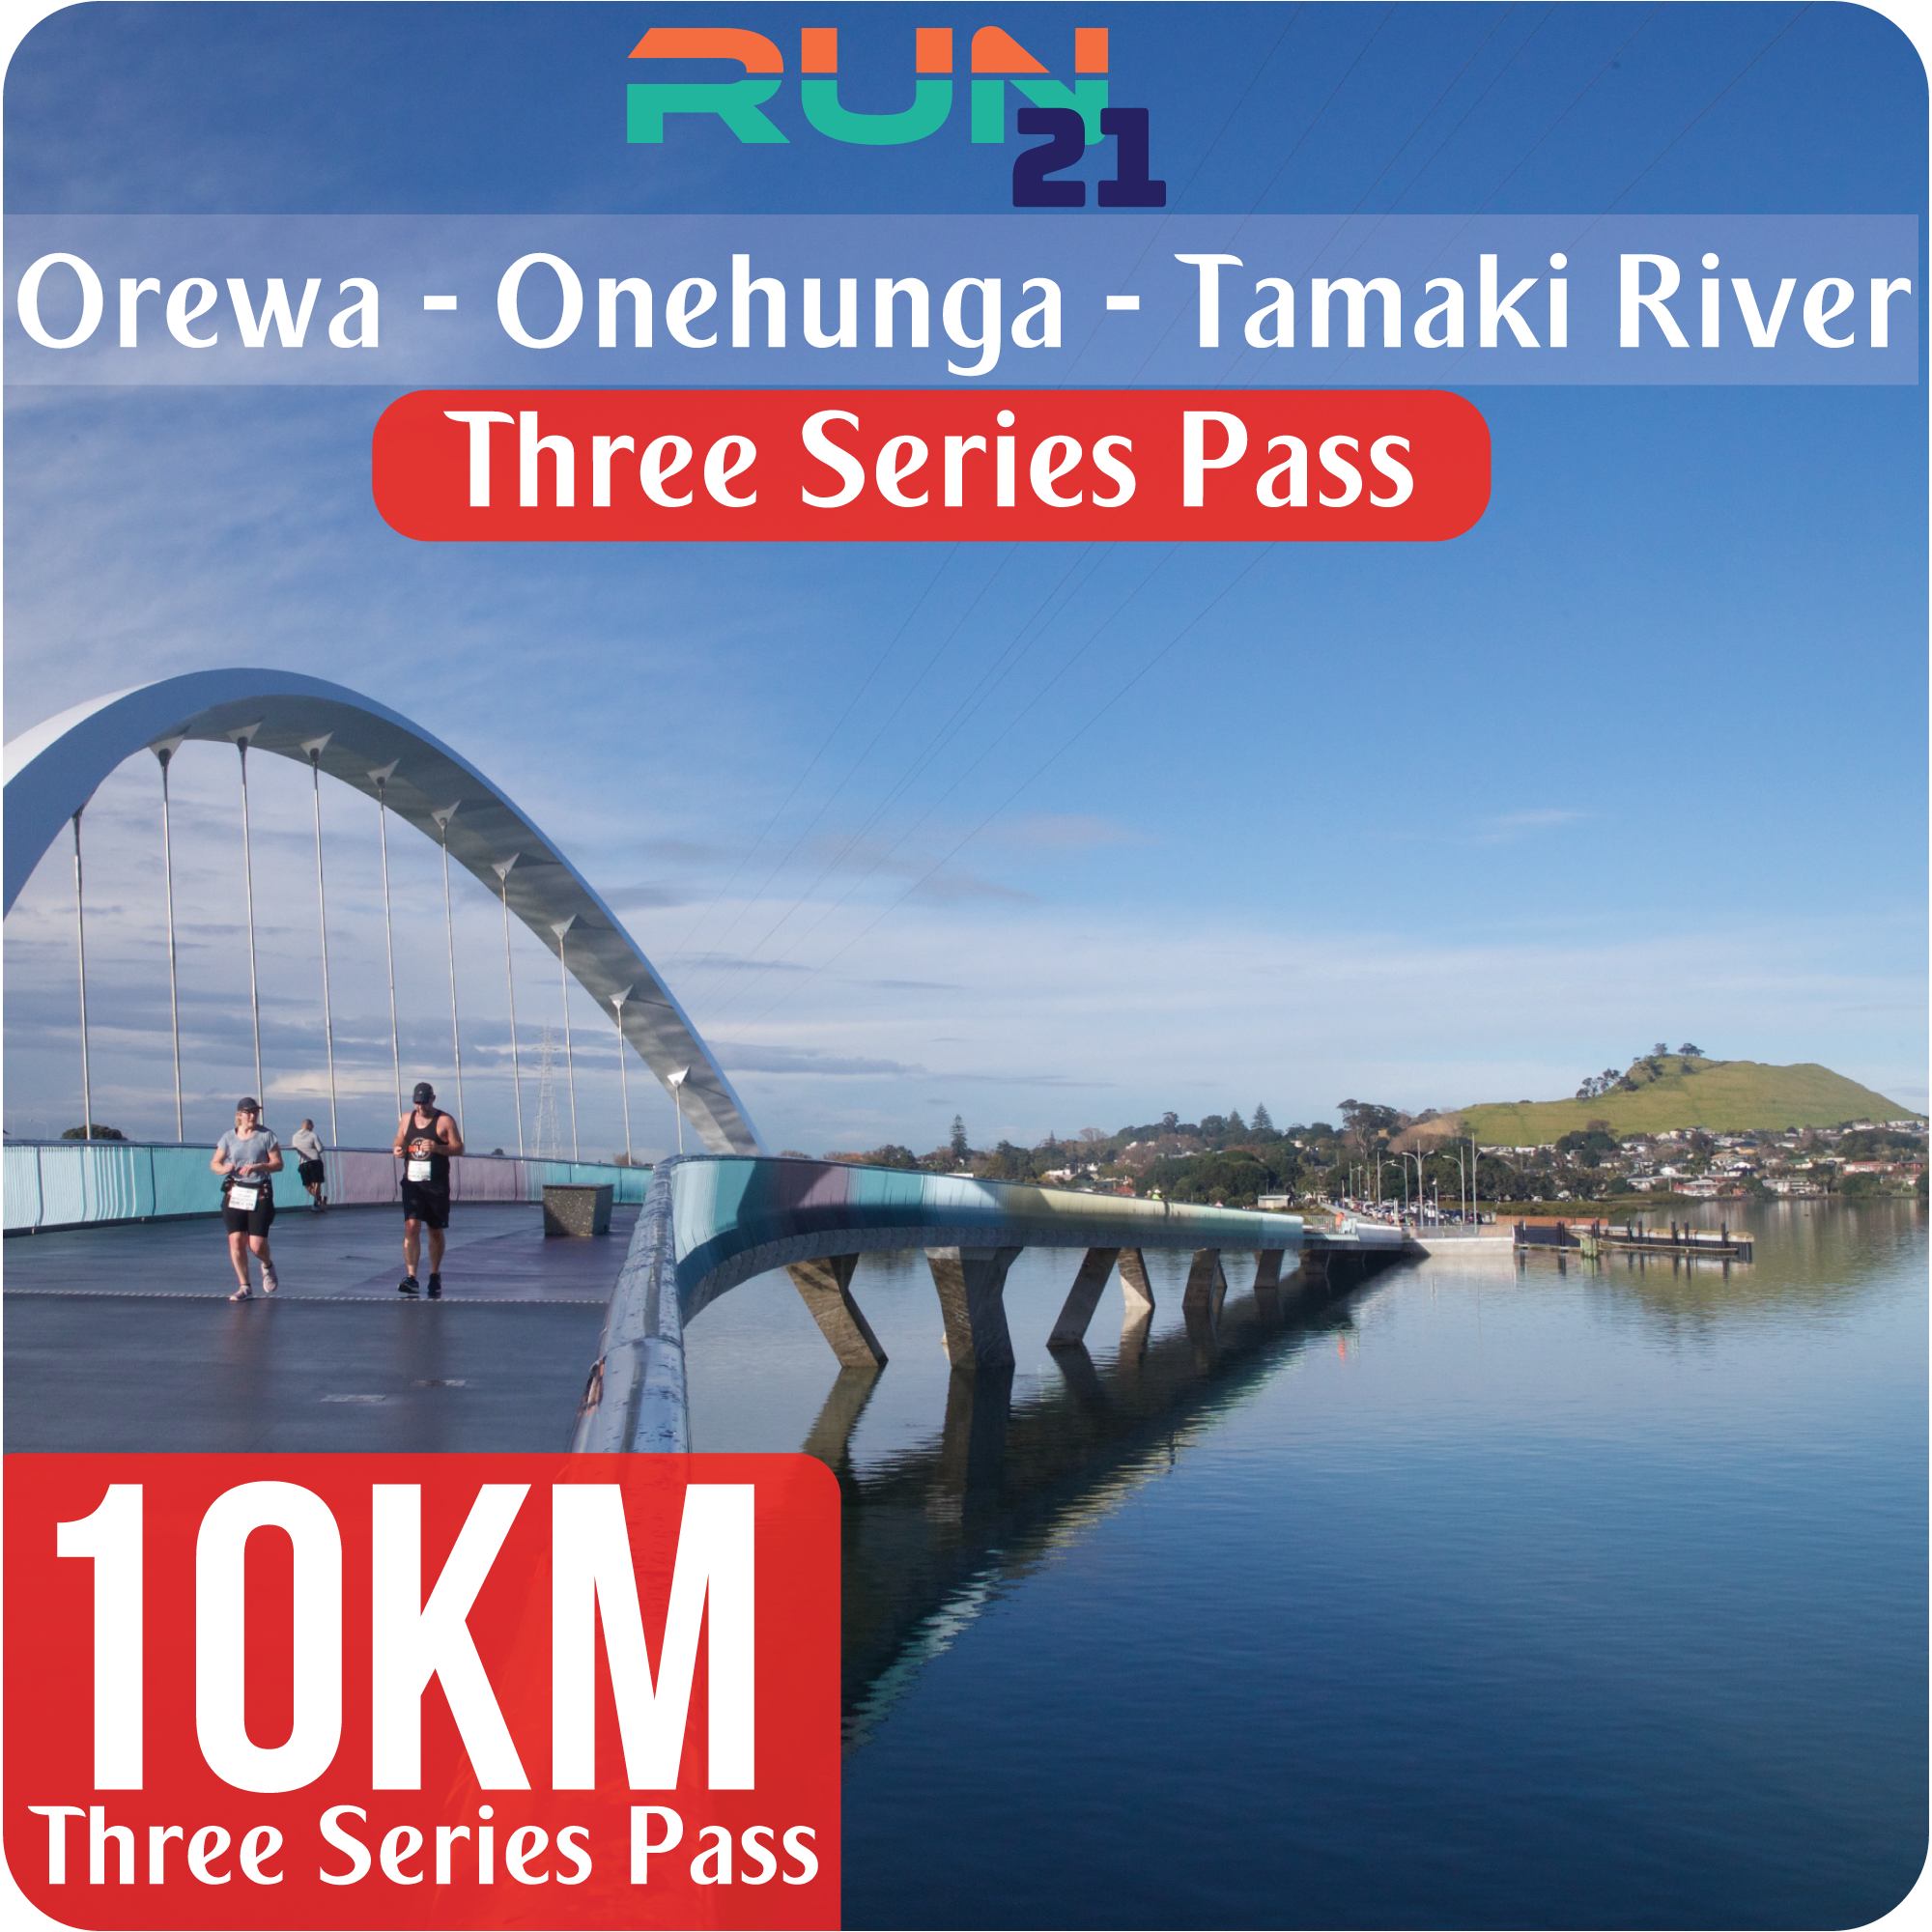 10 KM - Three Series Pass